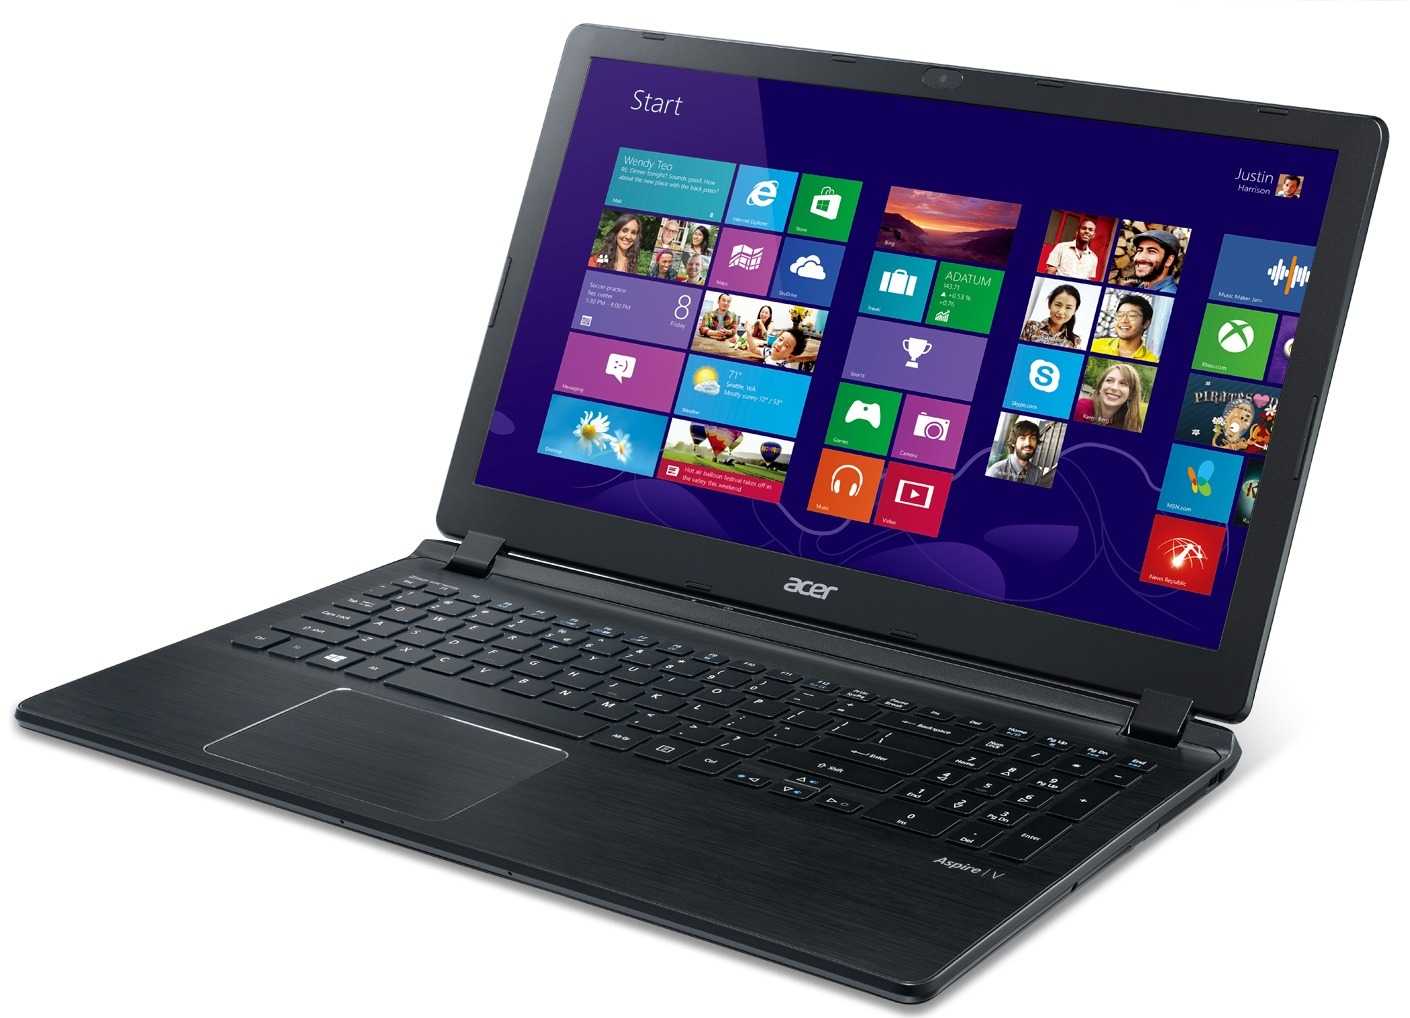 Ноутбук-планшет acer aspire v7 582pg-74508g52tkk — купить, цена и характеристики, отзывы